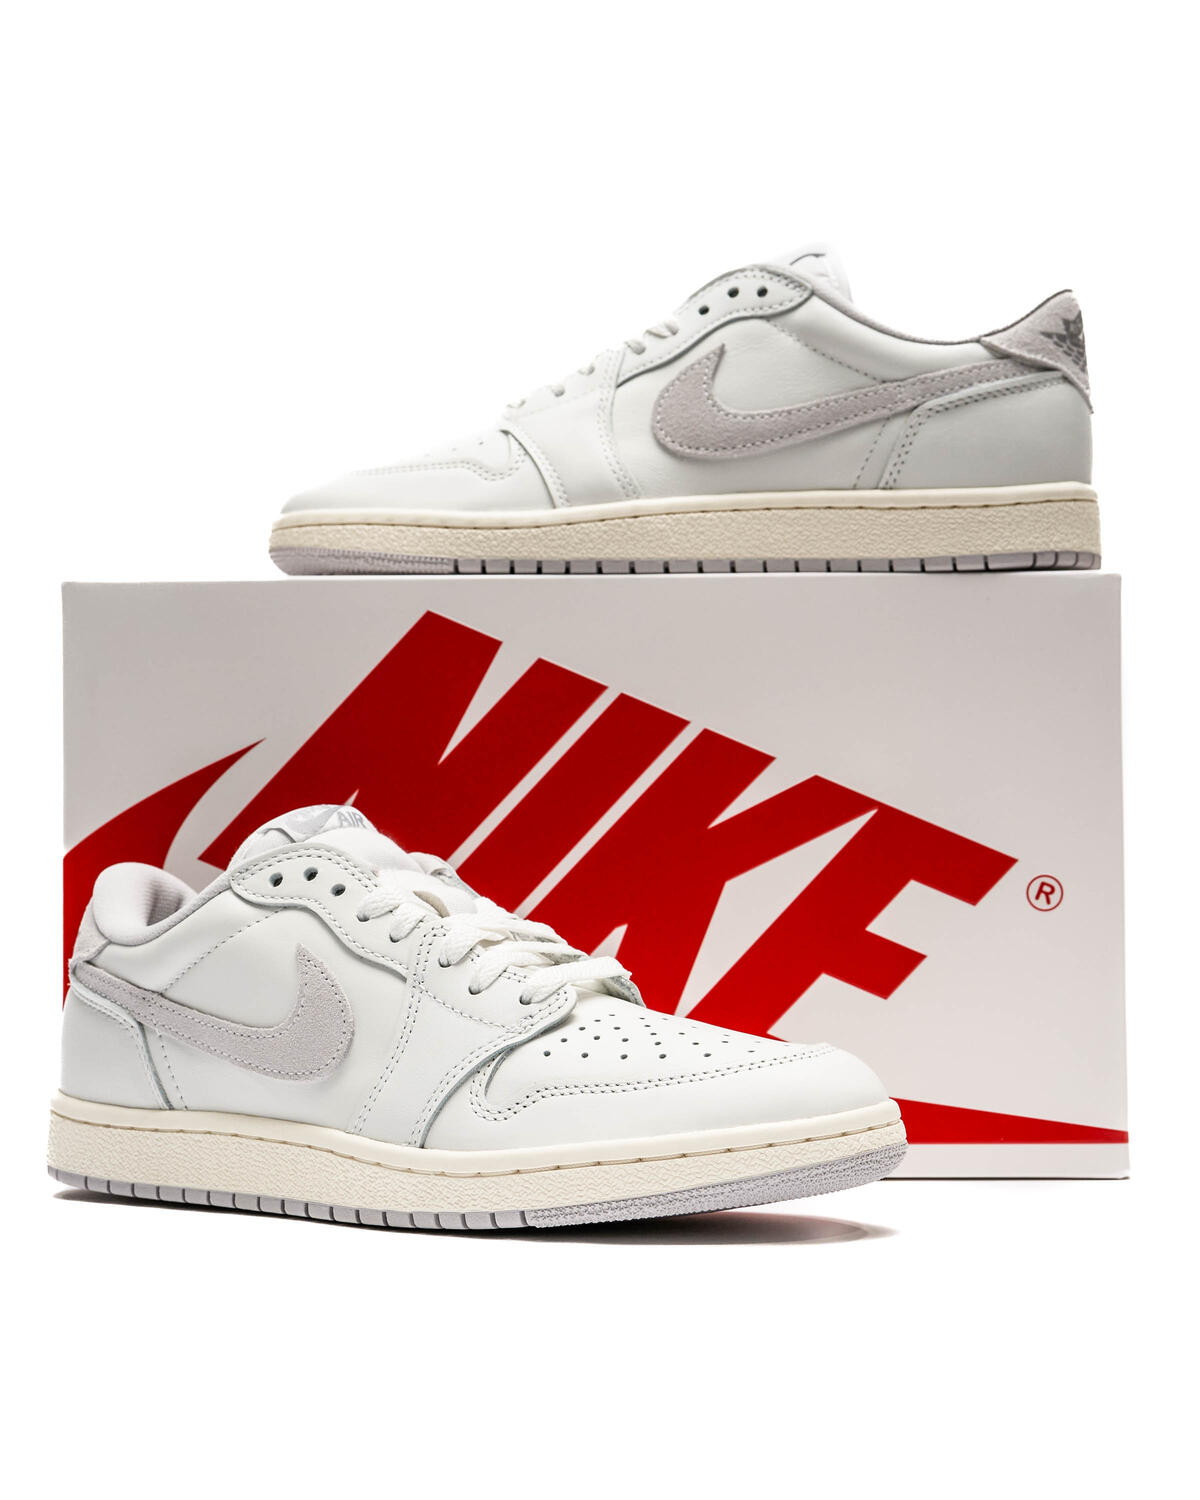 Jordan 1 low > Air Force 1 : r/Sneakers